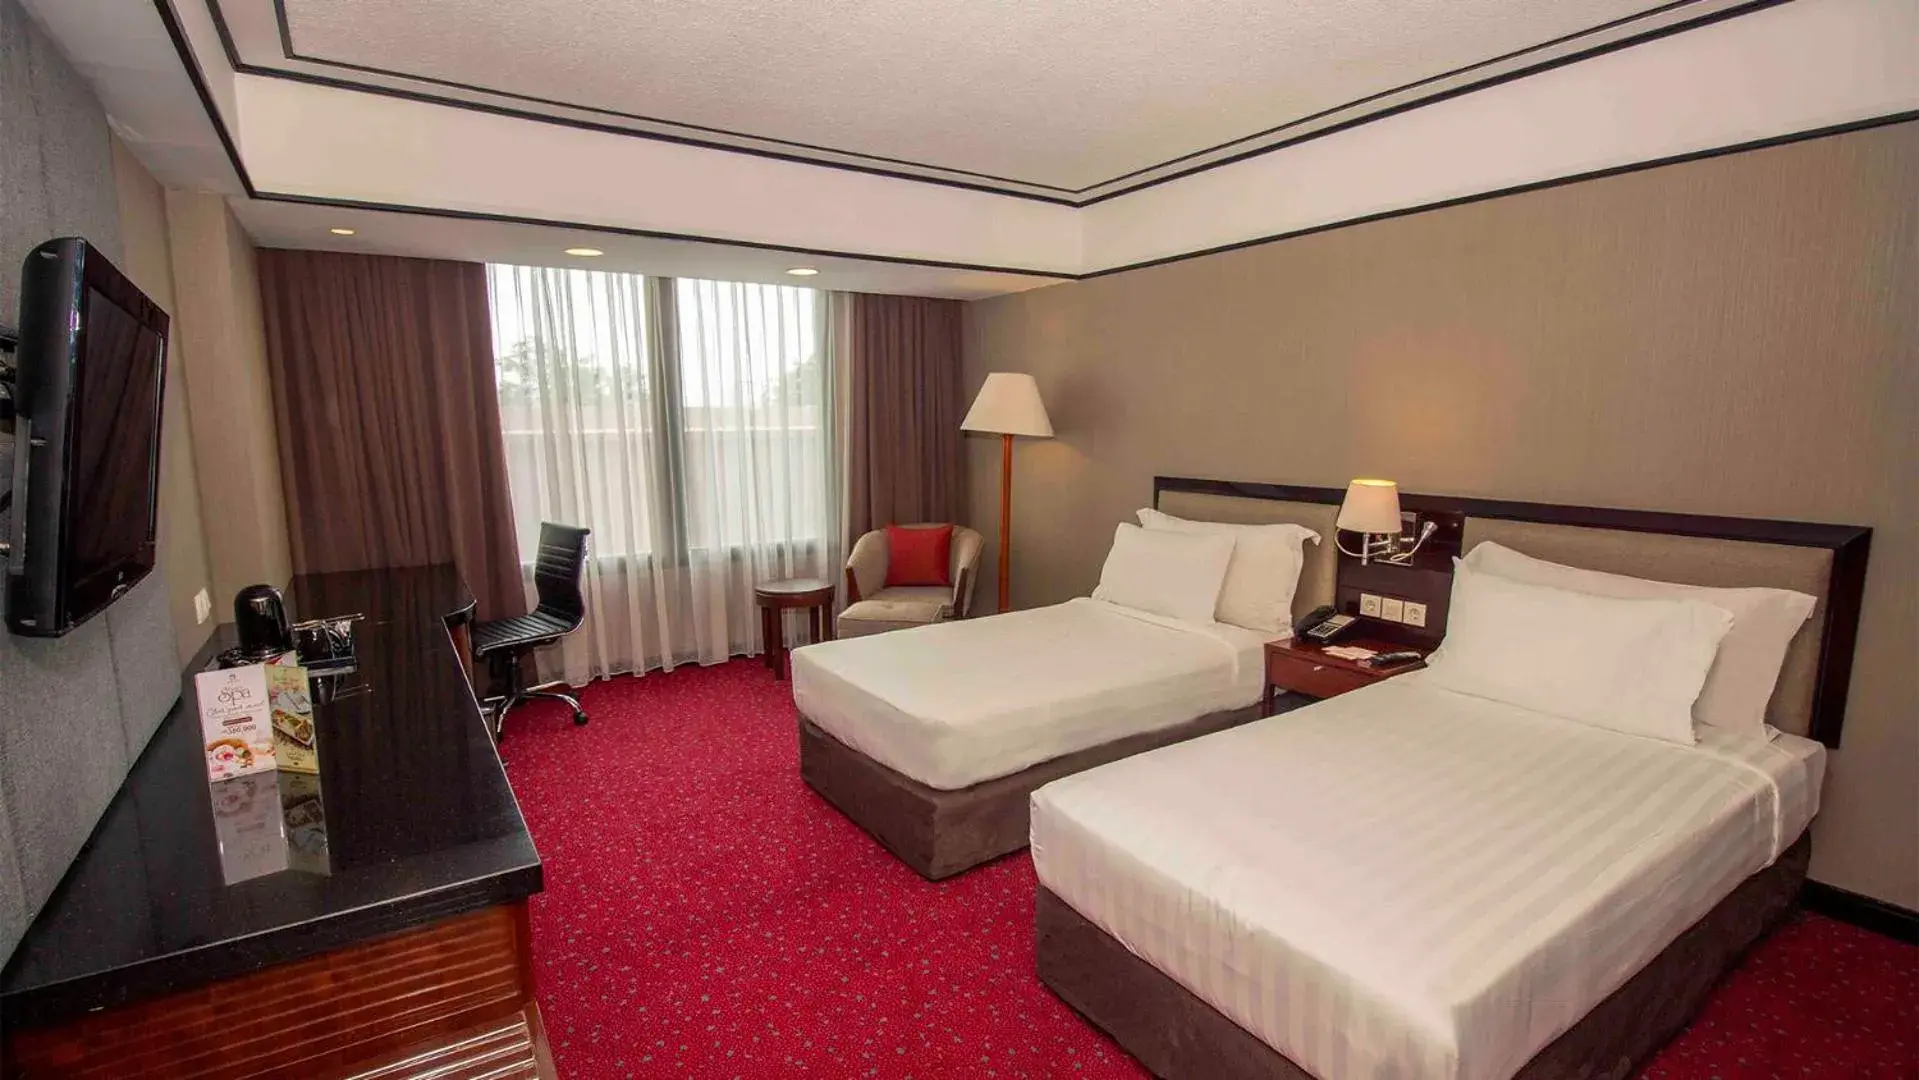 Bedroom, Bed in Redtop Hotel